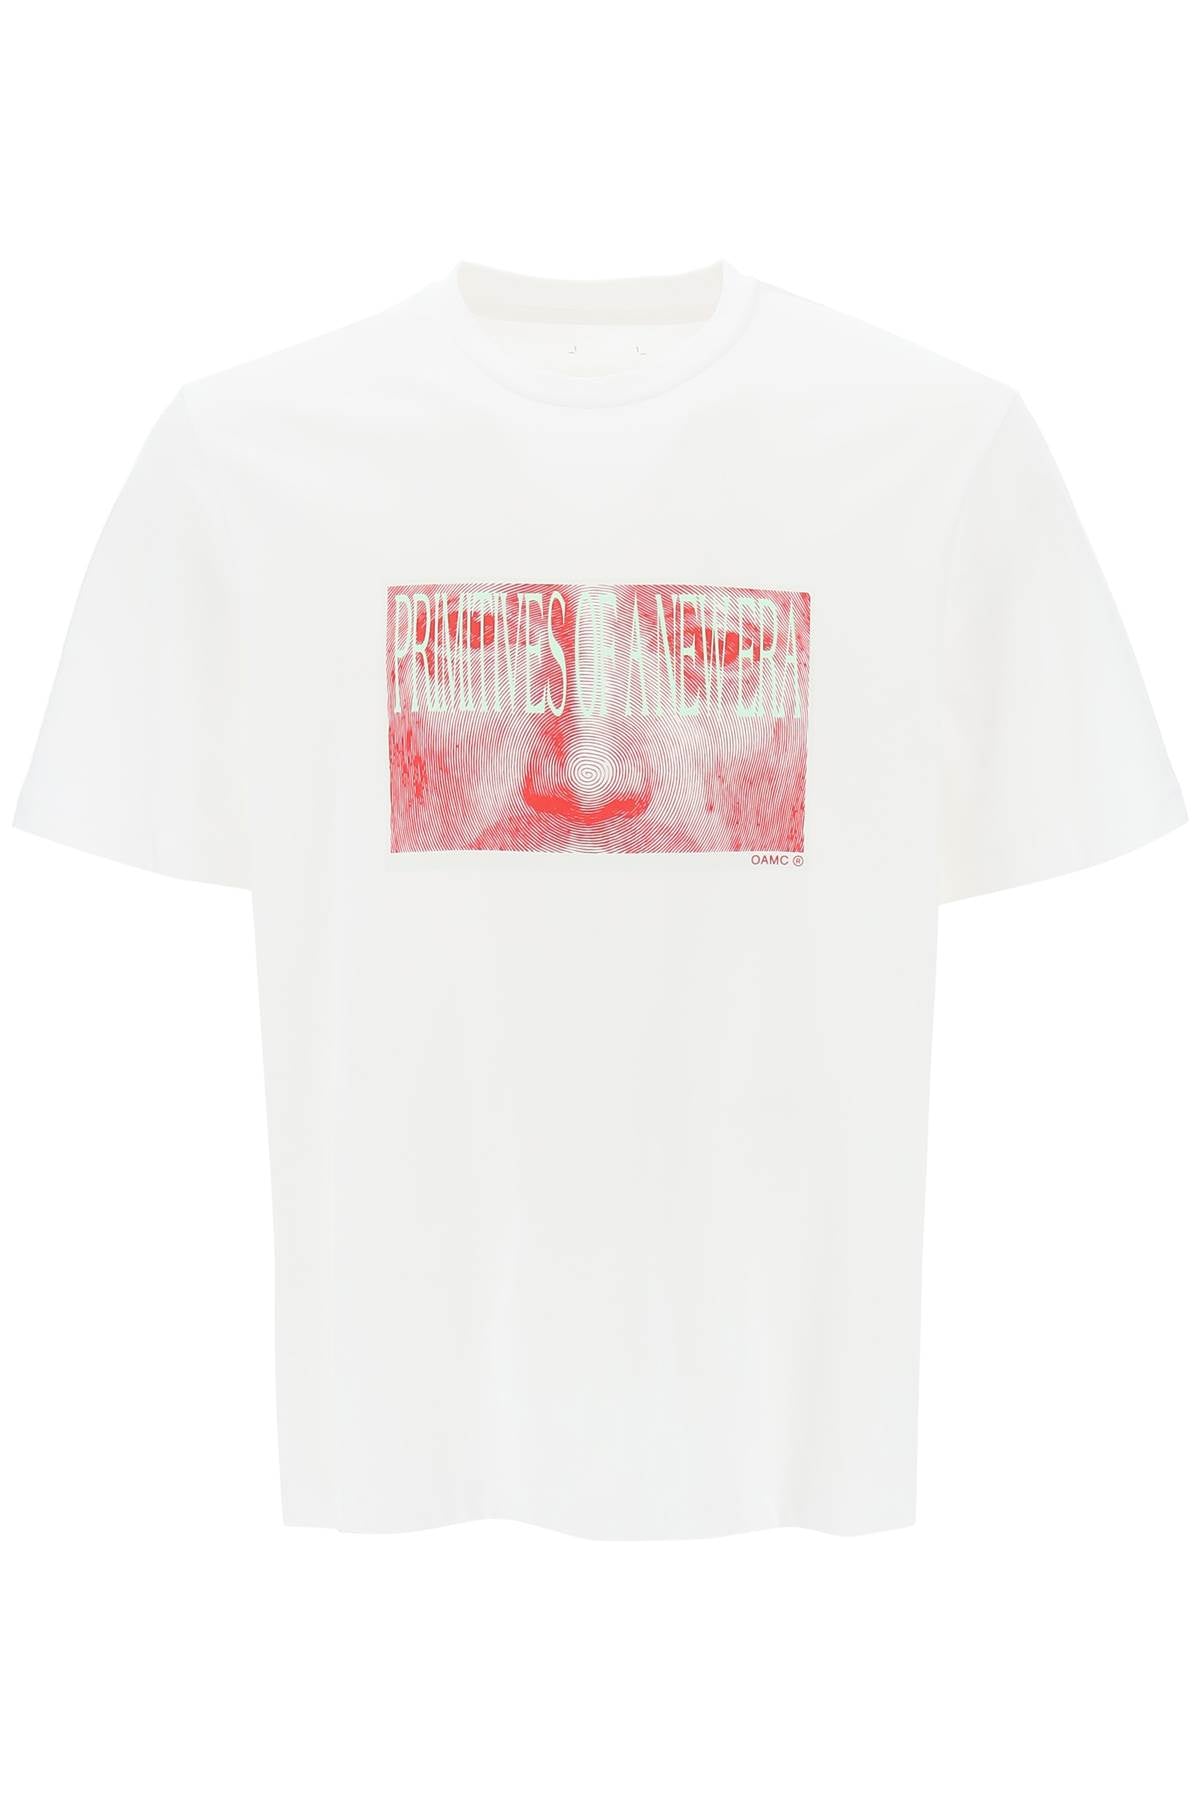 Oamc 'albrecht' t-shirt with print-0